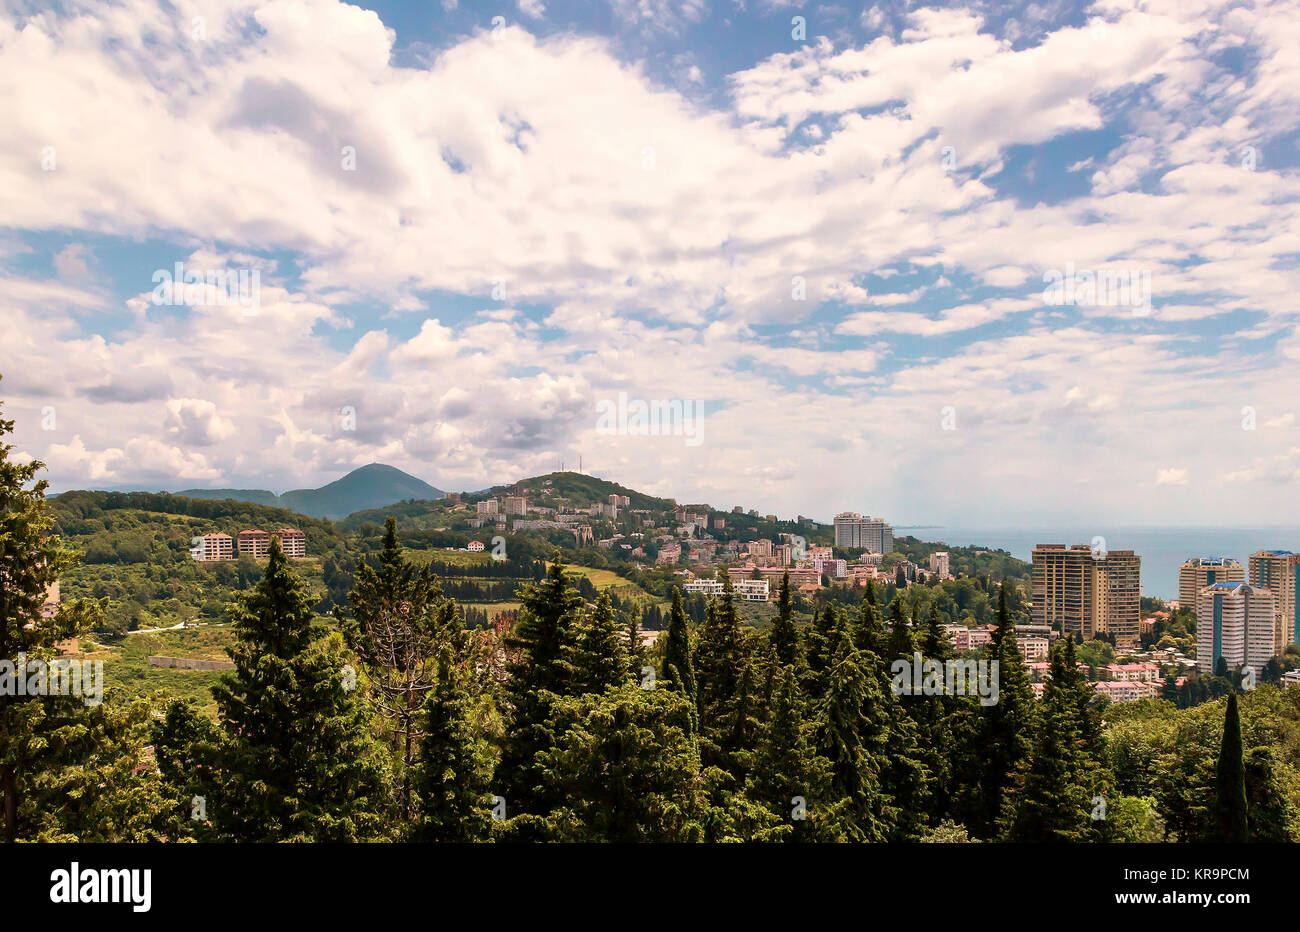 Panoramic view of resort town Sochi. Stock Photo